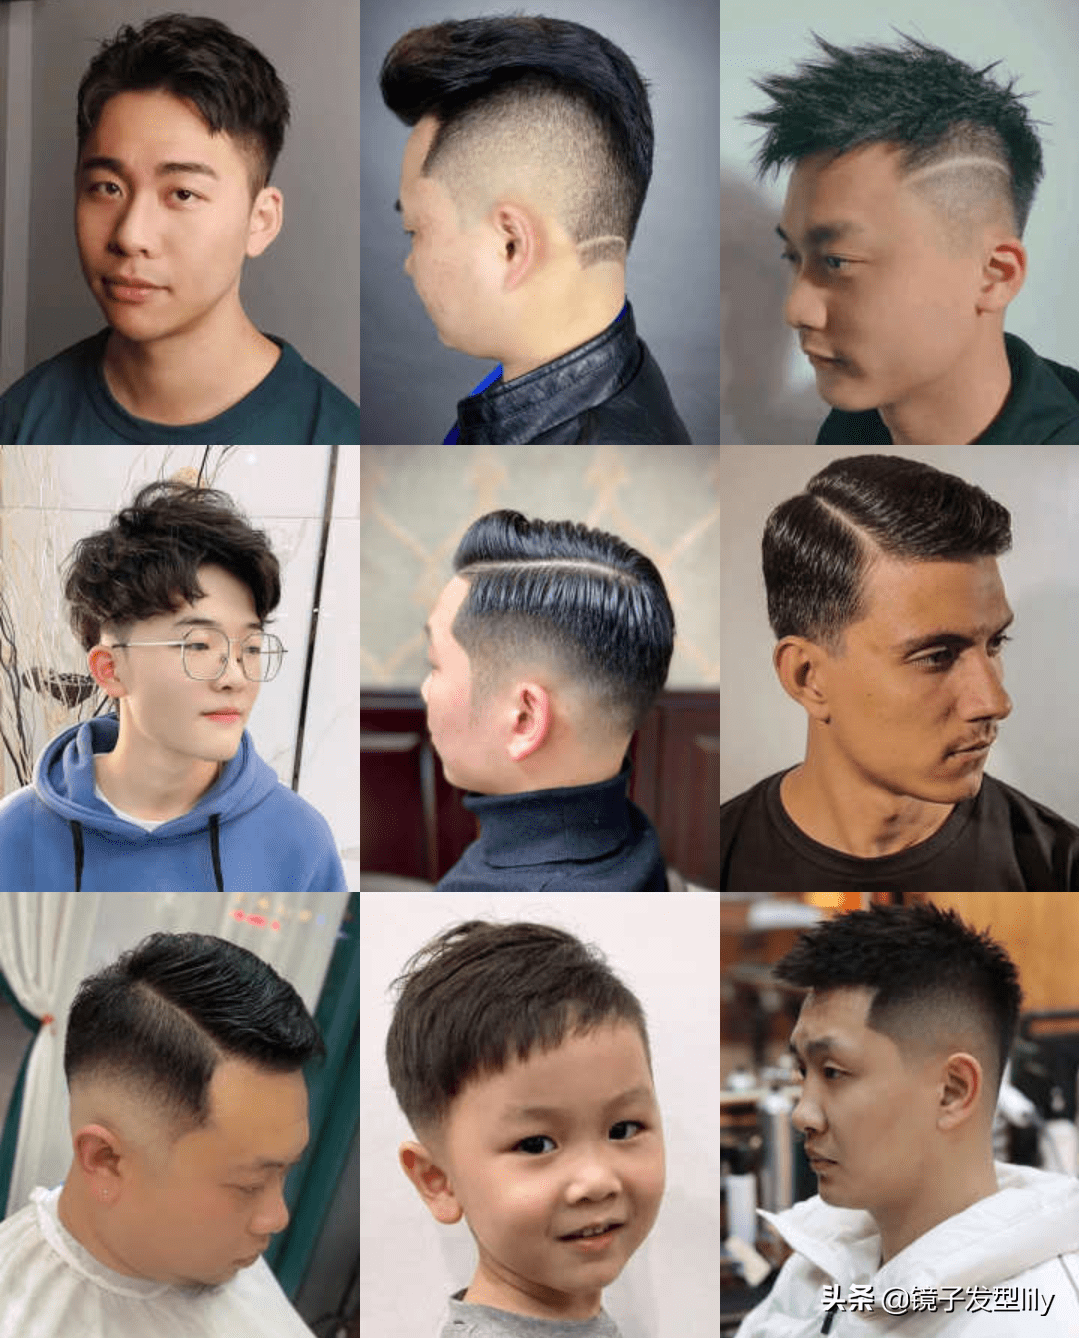 可能很多男士已经剪烦了,好像到任何一家理发店,大多数发型师都特别爱